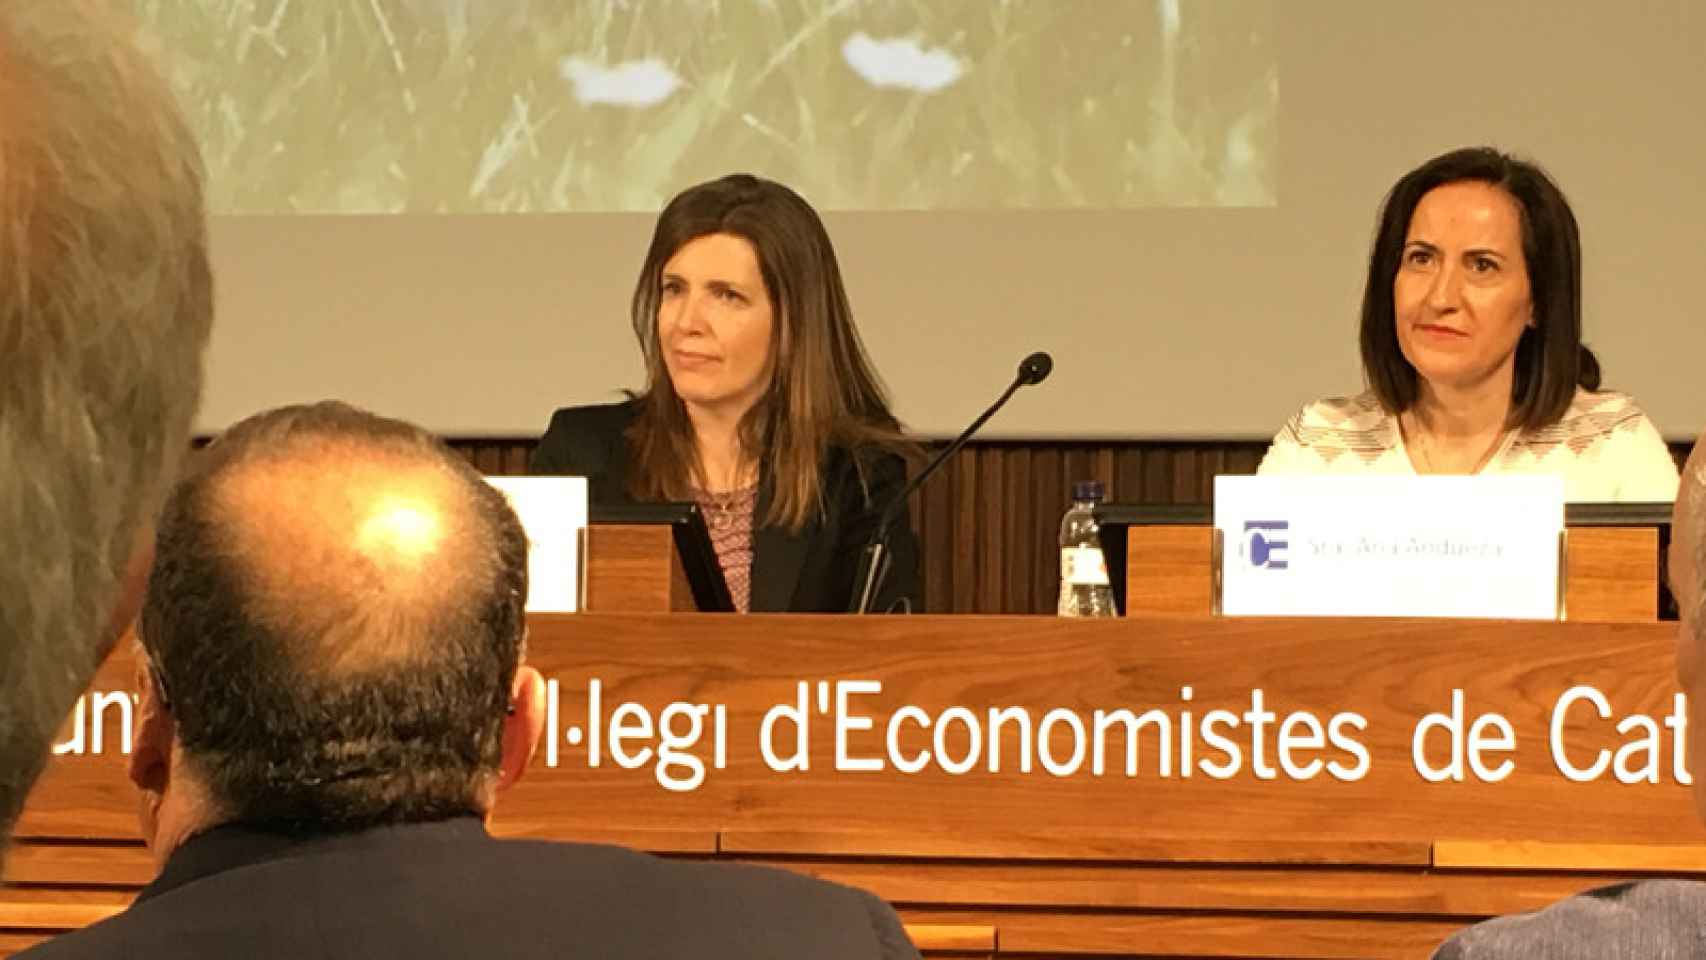 La vicepresidente económica del Barça, Susana Monje, y la representante de Deloitte, Ana Andueza, durante la presentación del informe 'El impacto económico del Barça en Barcelona'.